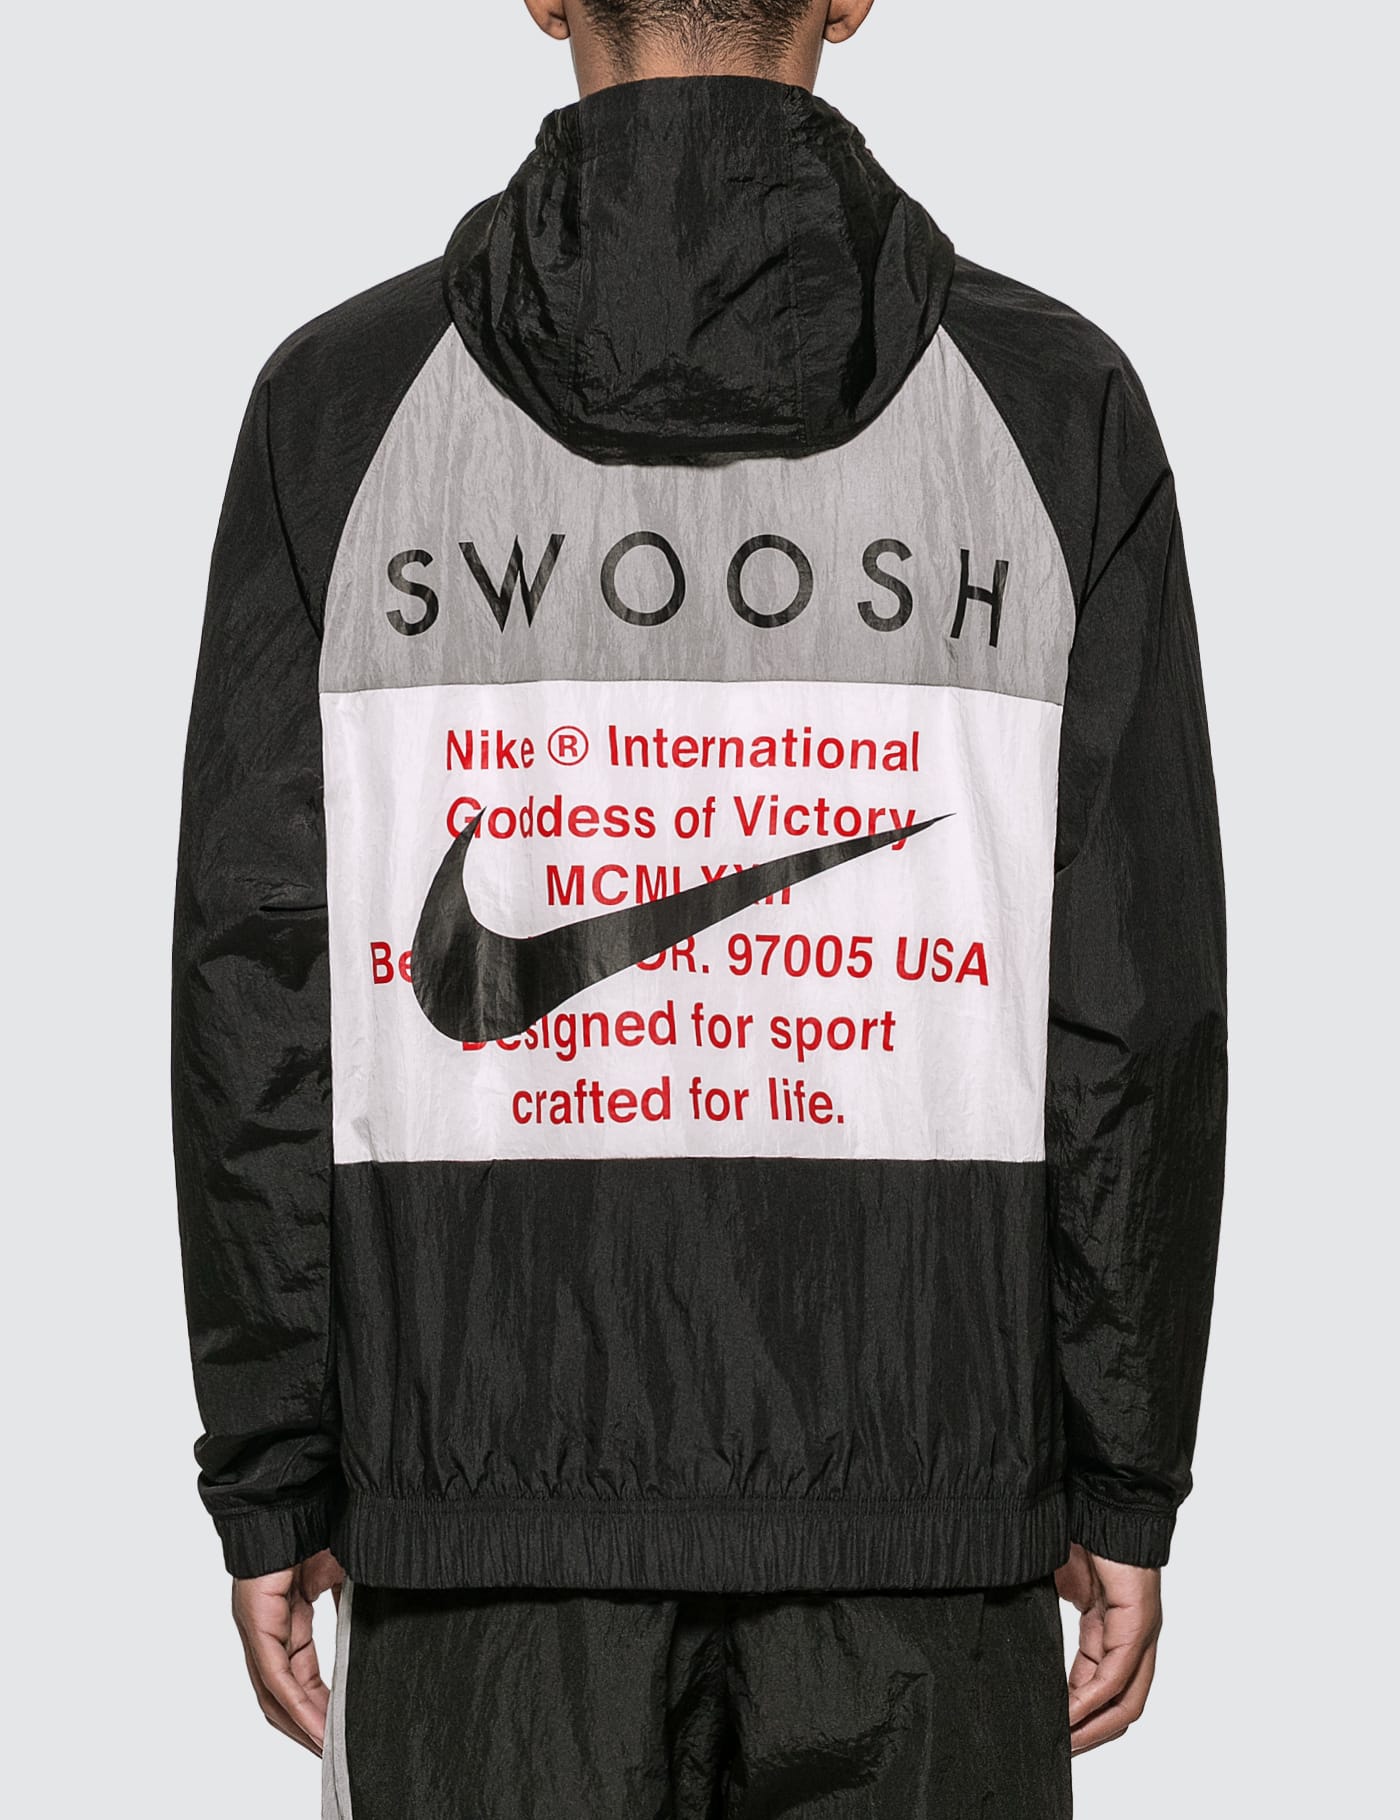 格安通販 【完品】Supreme Jacket Sport Hooded Nike ナイロンジャケット